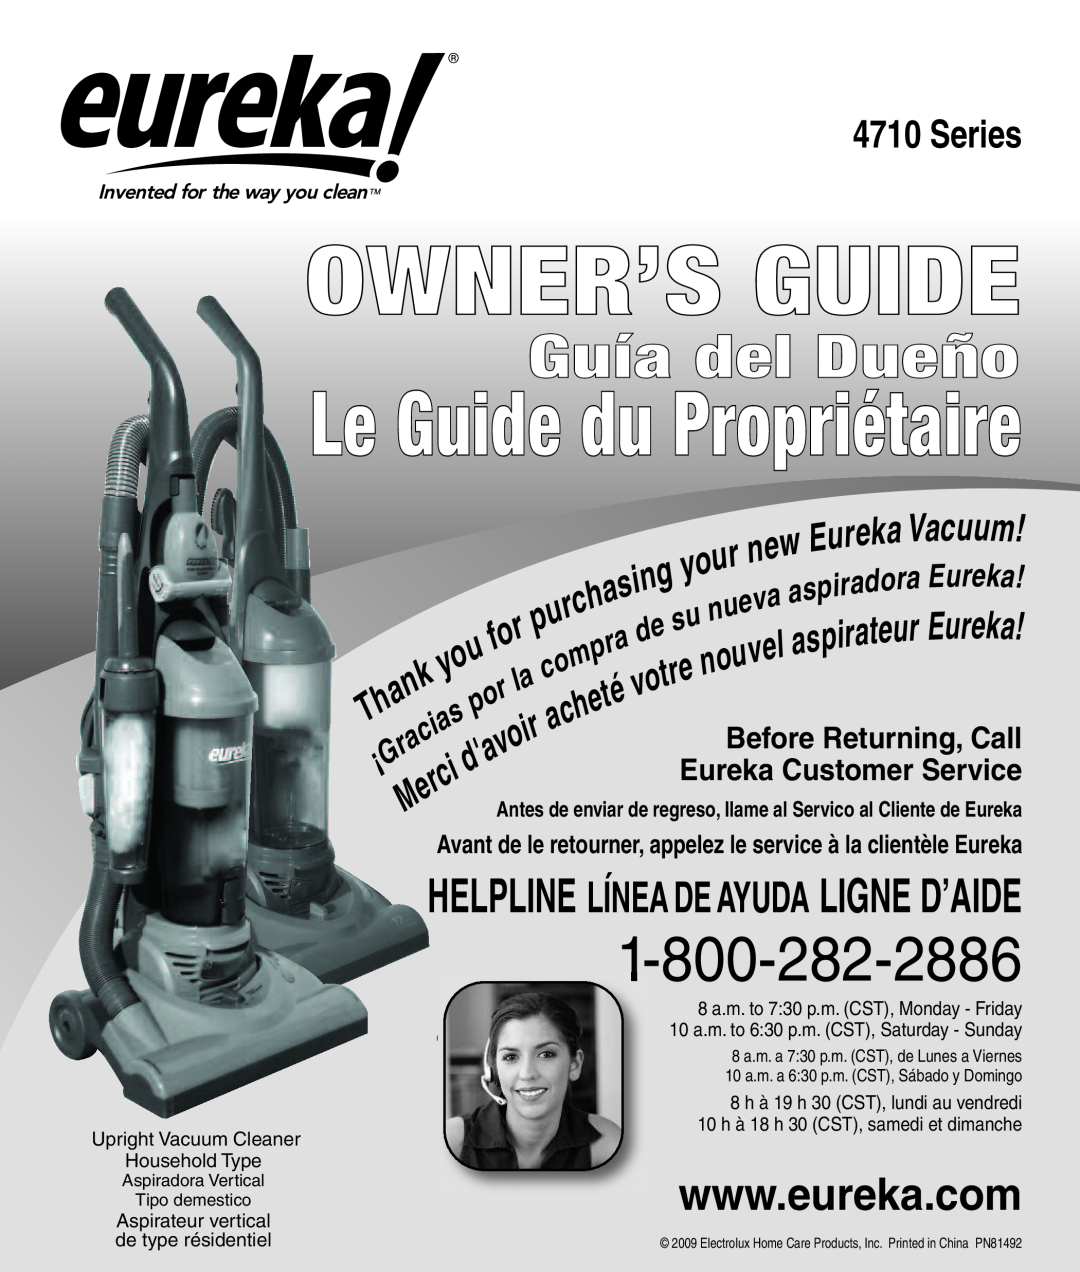 Eureka 4710 Series manual Owner’S Guide, Le Guide du Propriétaire, Guía del Dueño 